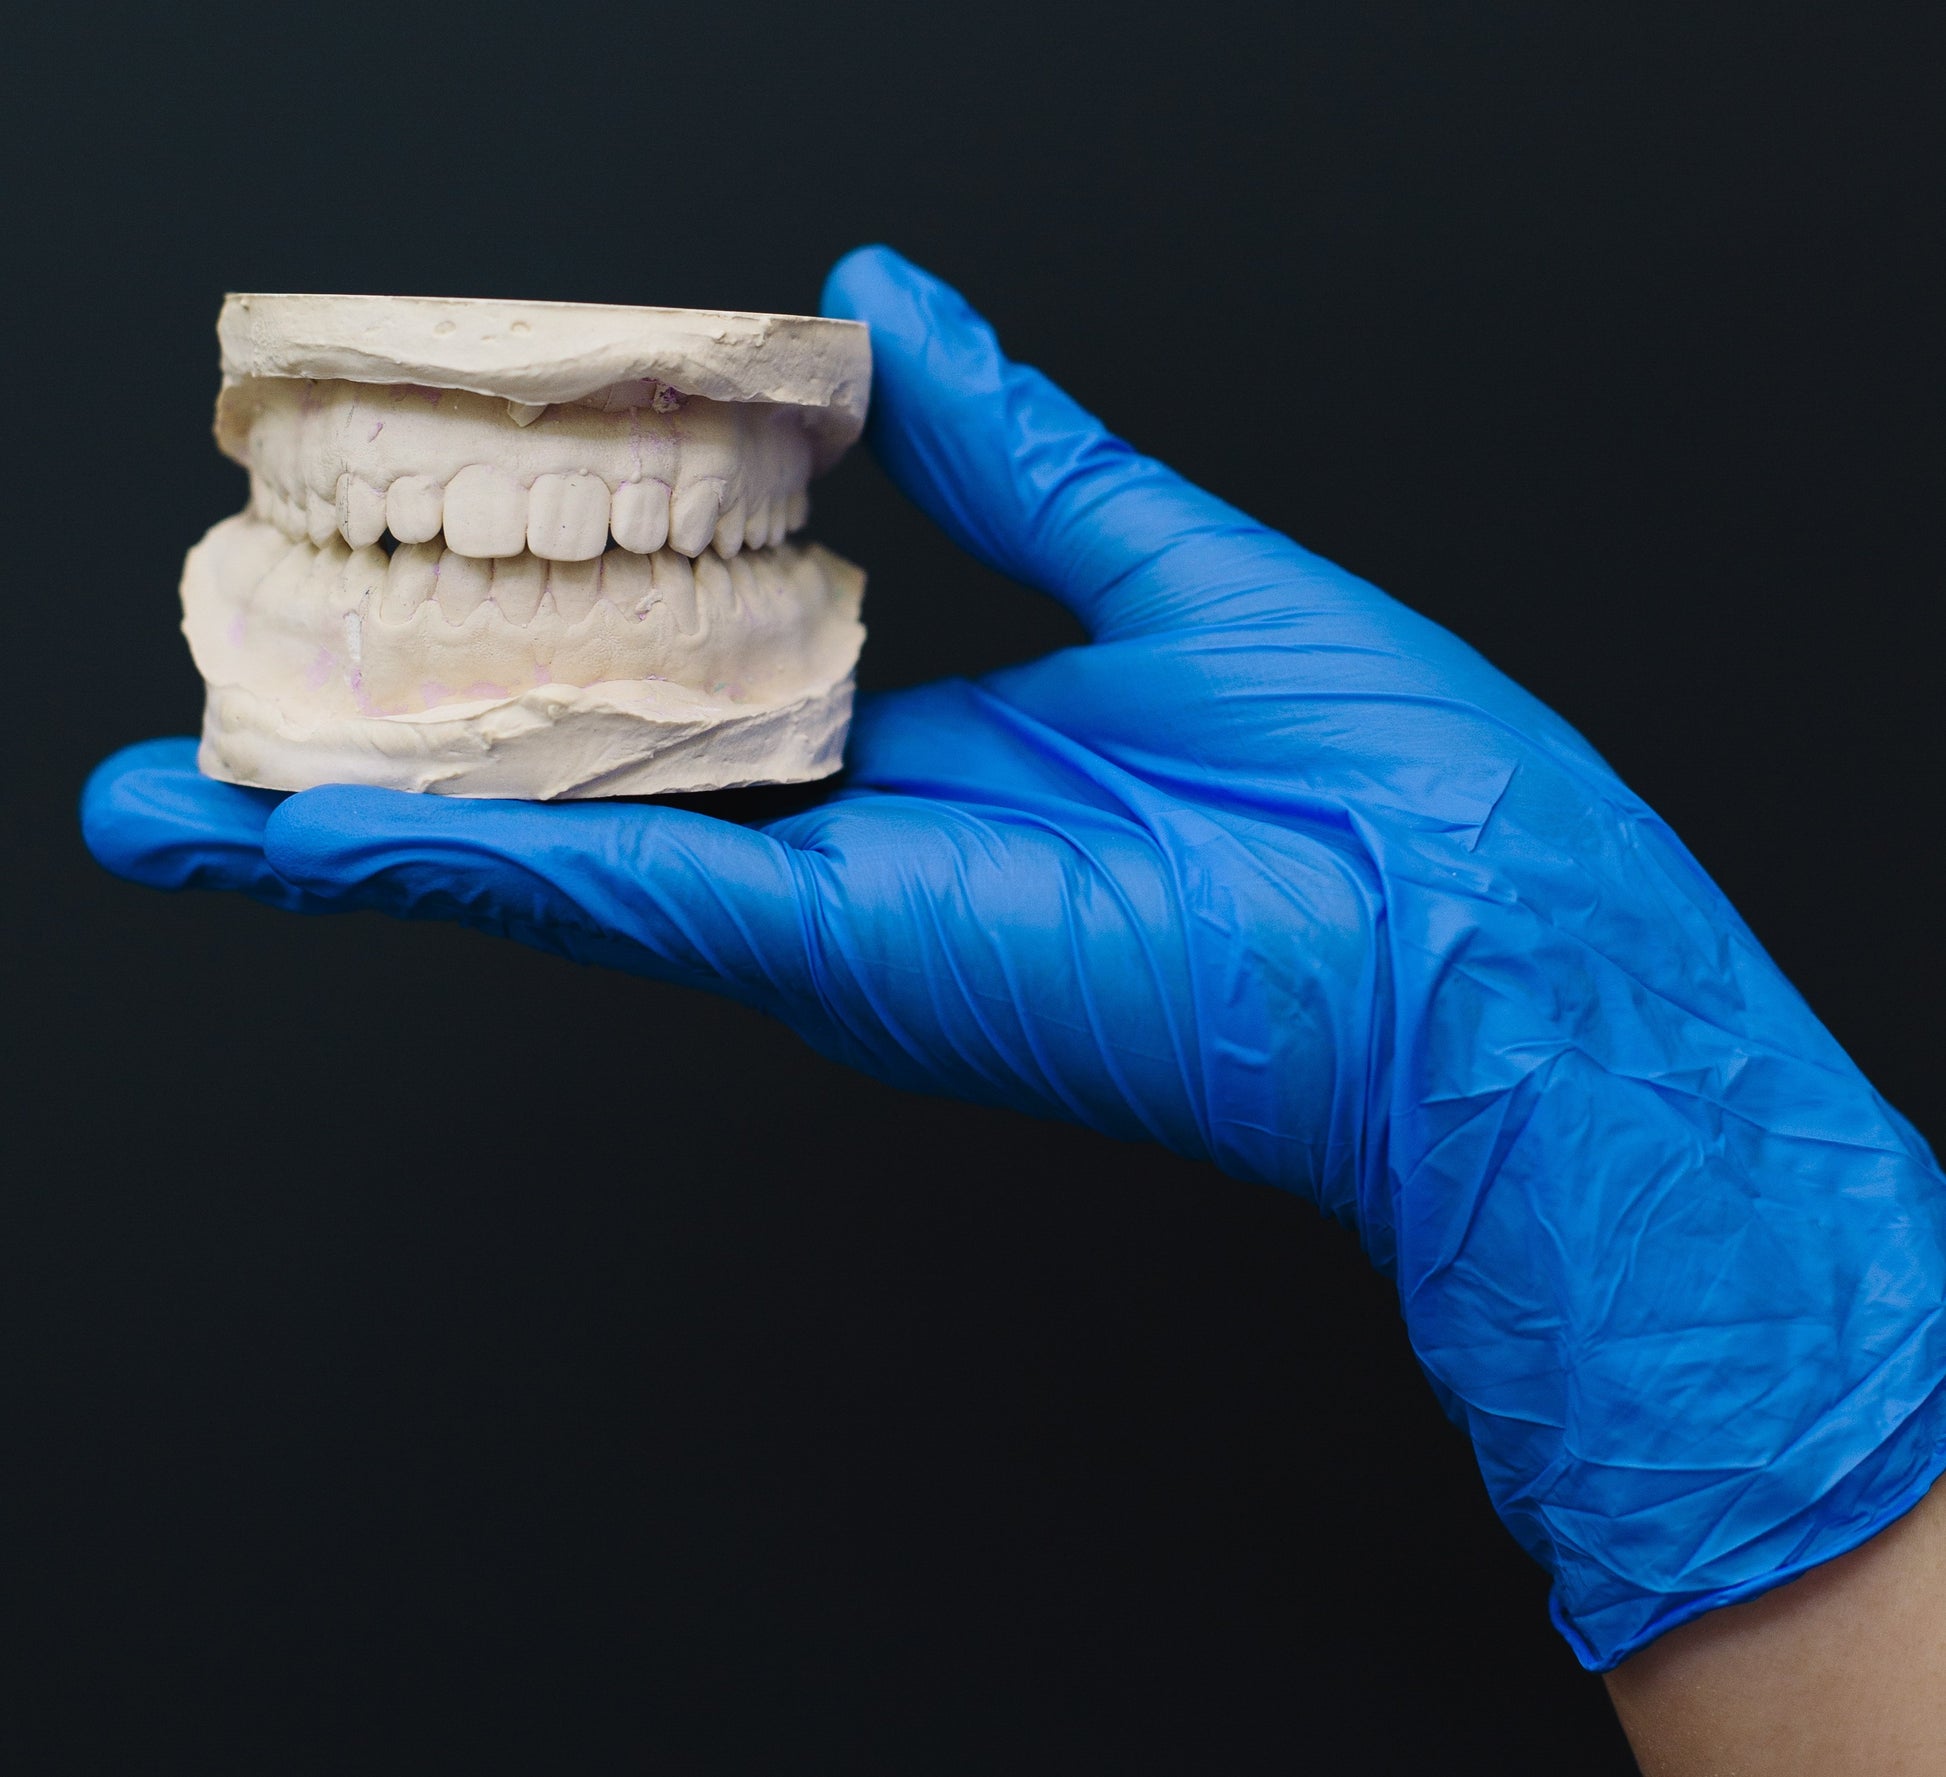 Dentist hand holding set of teeth modeled using USG plaster